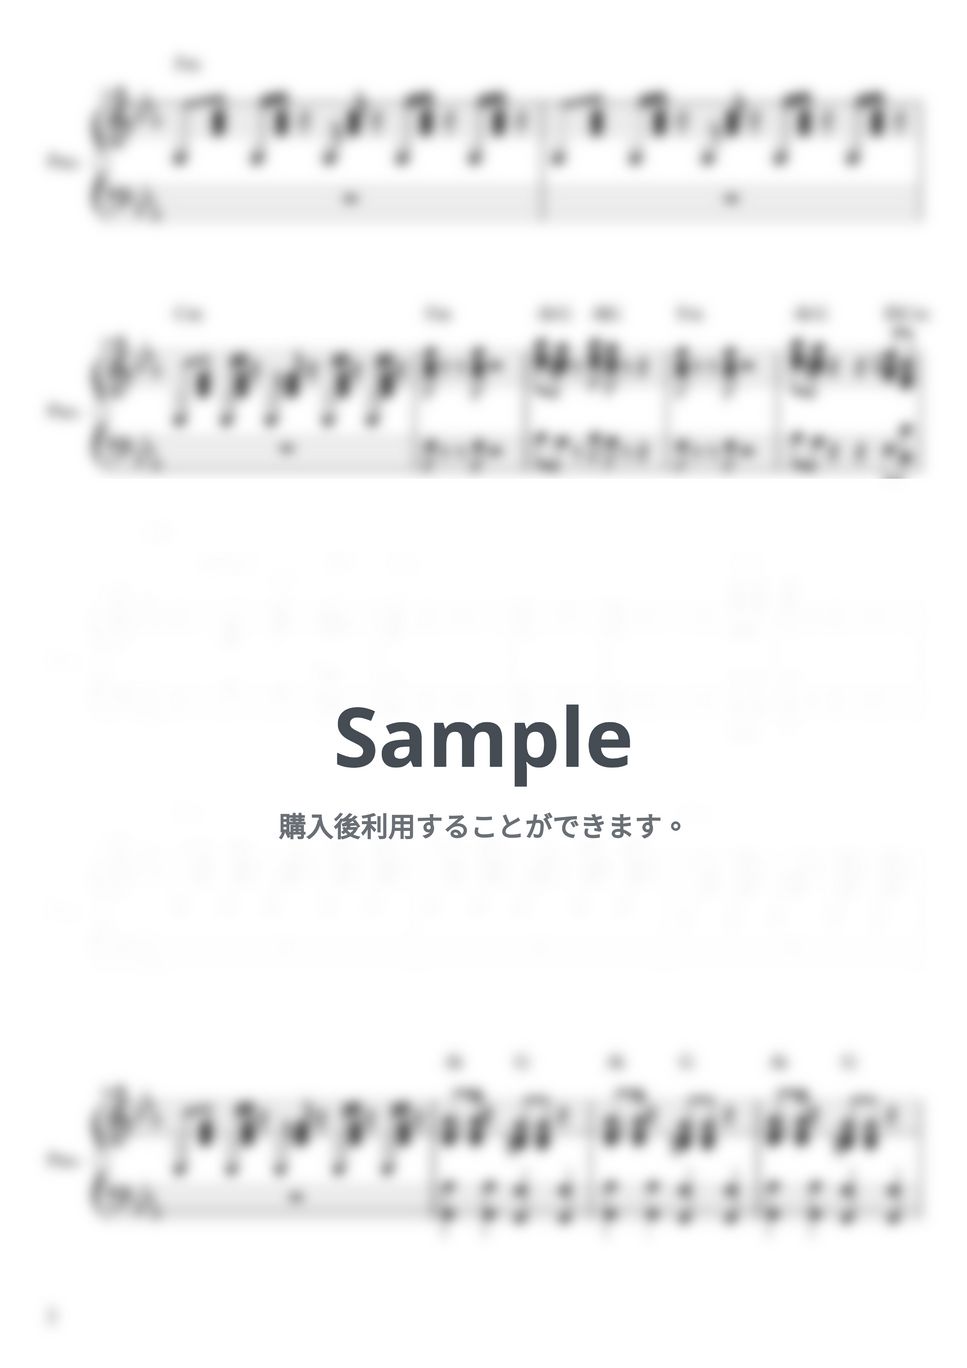 山口百恵 - プレイバック Part2 ピアノ伴奏 by yuni